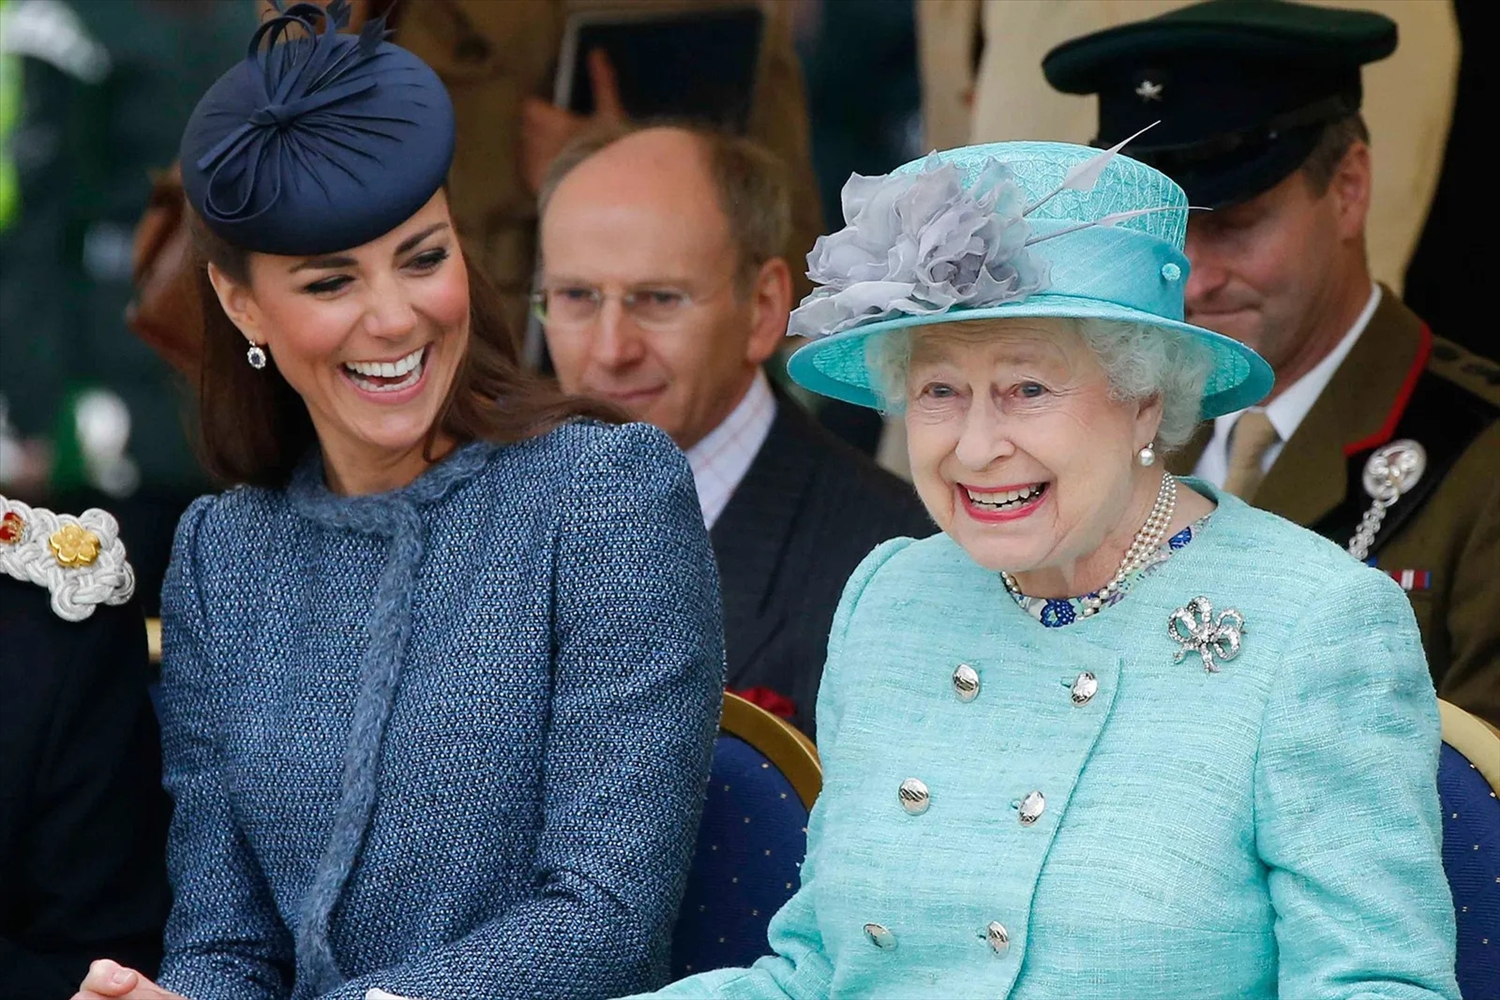 Màu xanh băng giúp Nữ hoàng trở nên trẻ trung hơn được bà mặc trong chuyến viếng thăm tới Nottingham cùng công nương Kate năm 2012